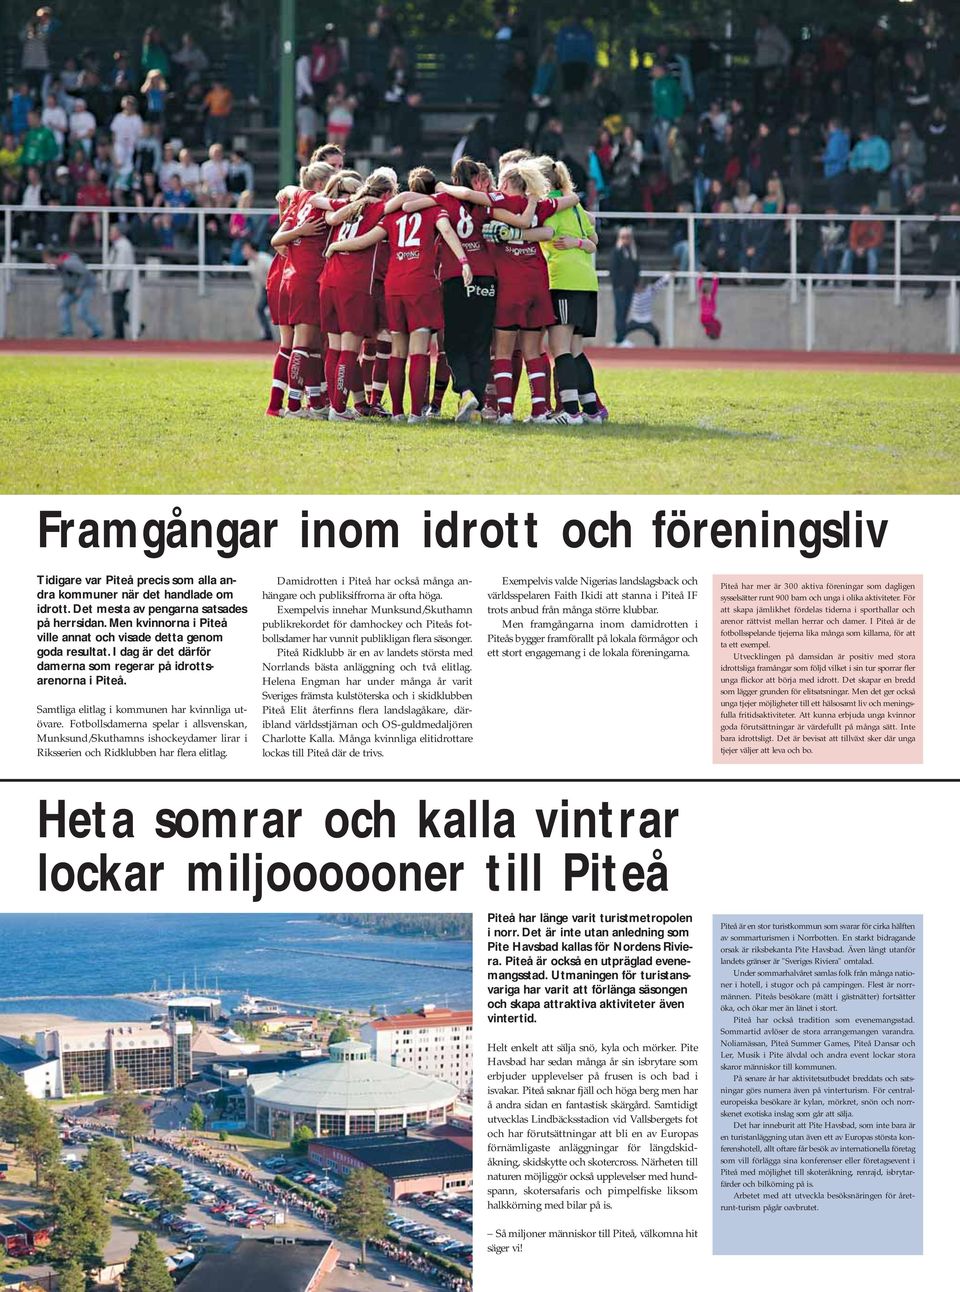 Fotbollsdamerna spelar i allsvenskan, Munksund/Skuthamns ishockeydamer lirar i Riksserien och Ridklubben har flera elitlag.